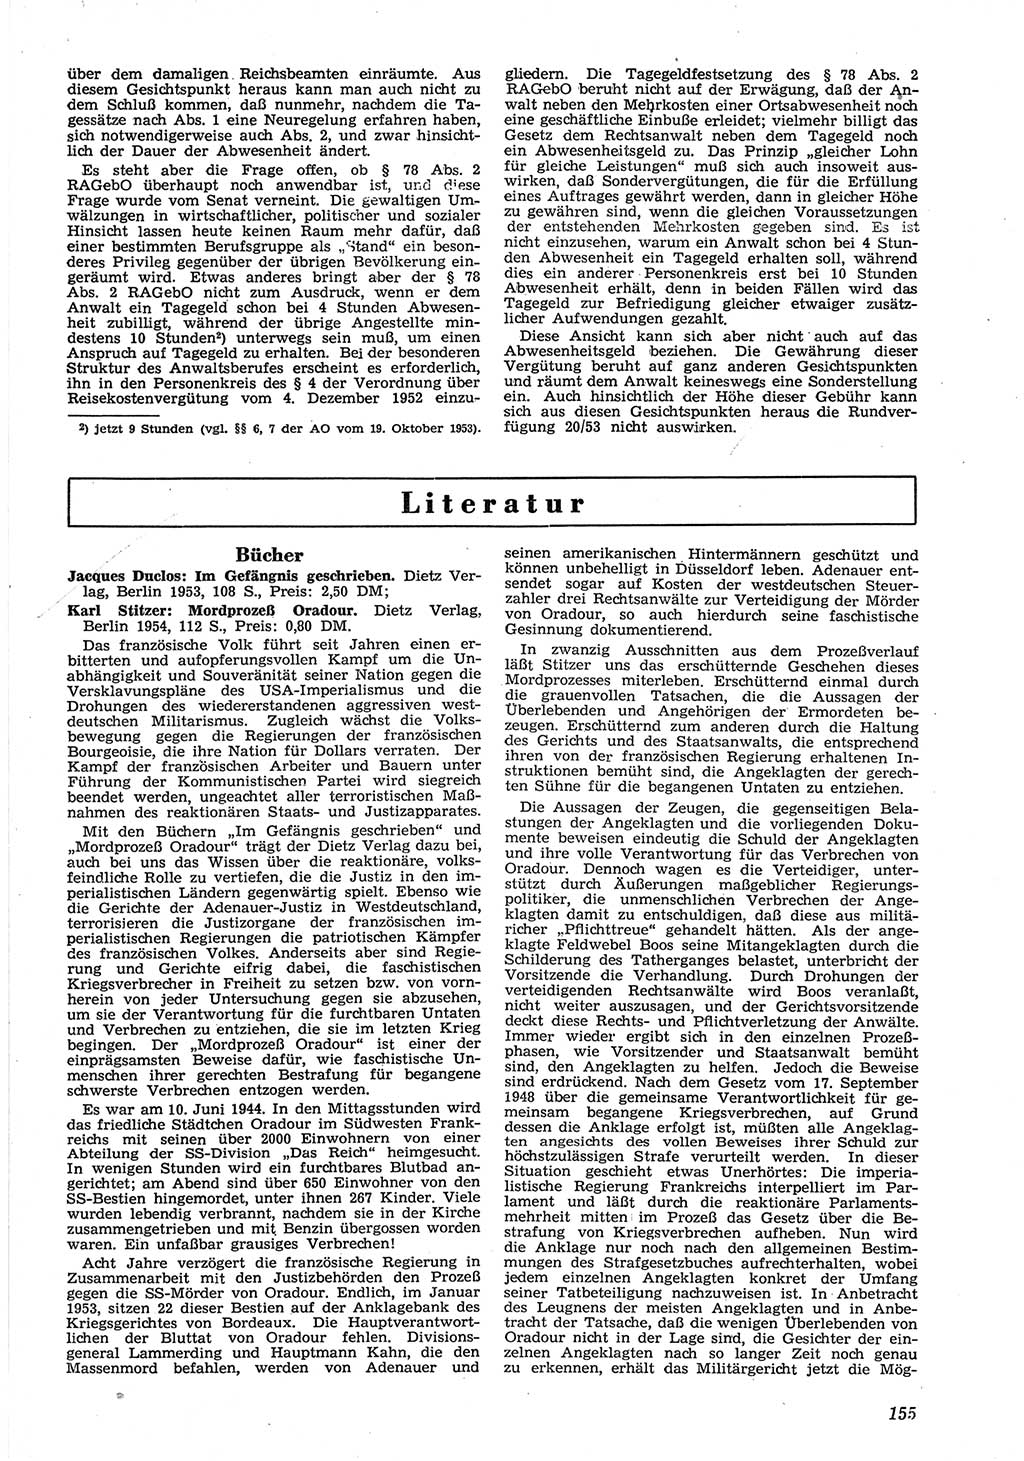 Neue Justiz (NJ), Zeitschrift für Recht und Rechtswissenschaft [Deutsche Demokratische Republik (DDR)], 8. Jahrgang 1954, Seite 155 (NJ DDR 1954, S. 155)